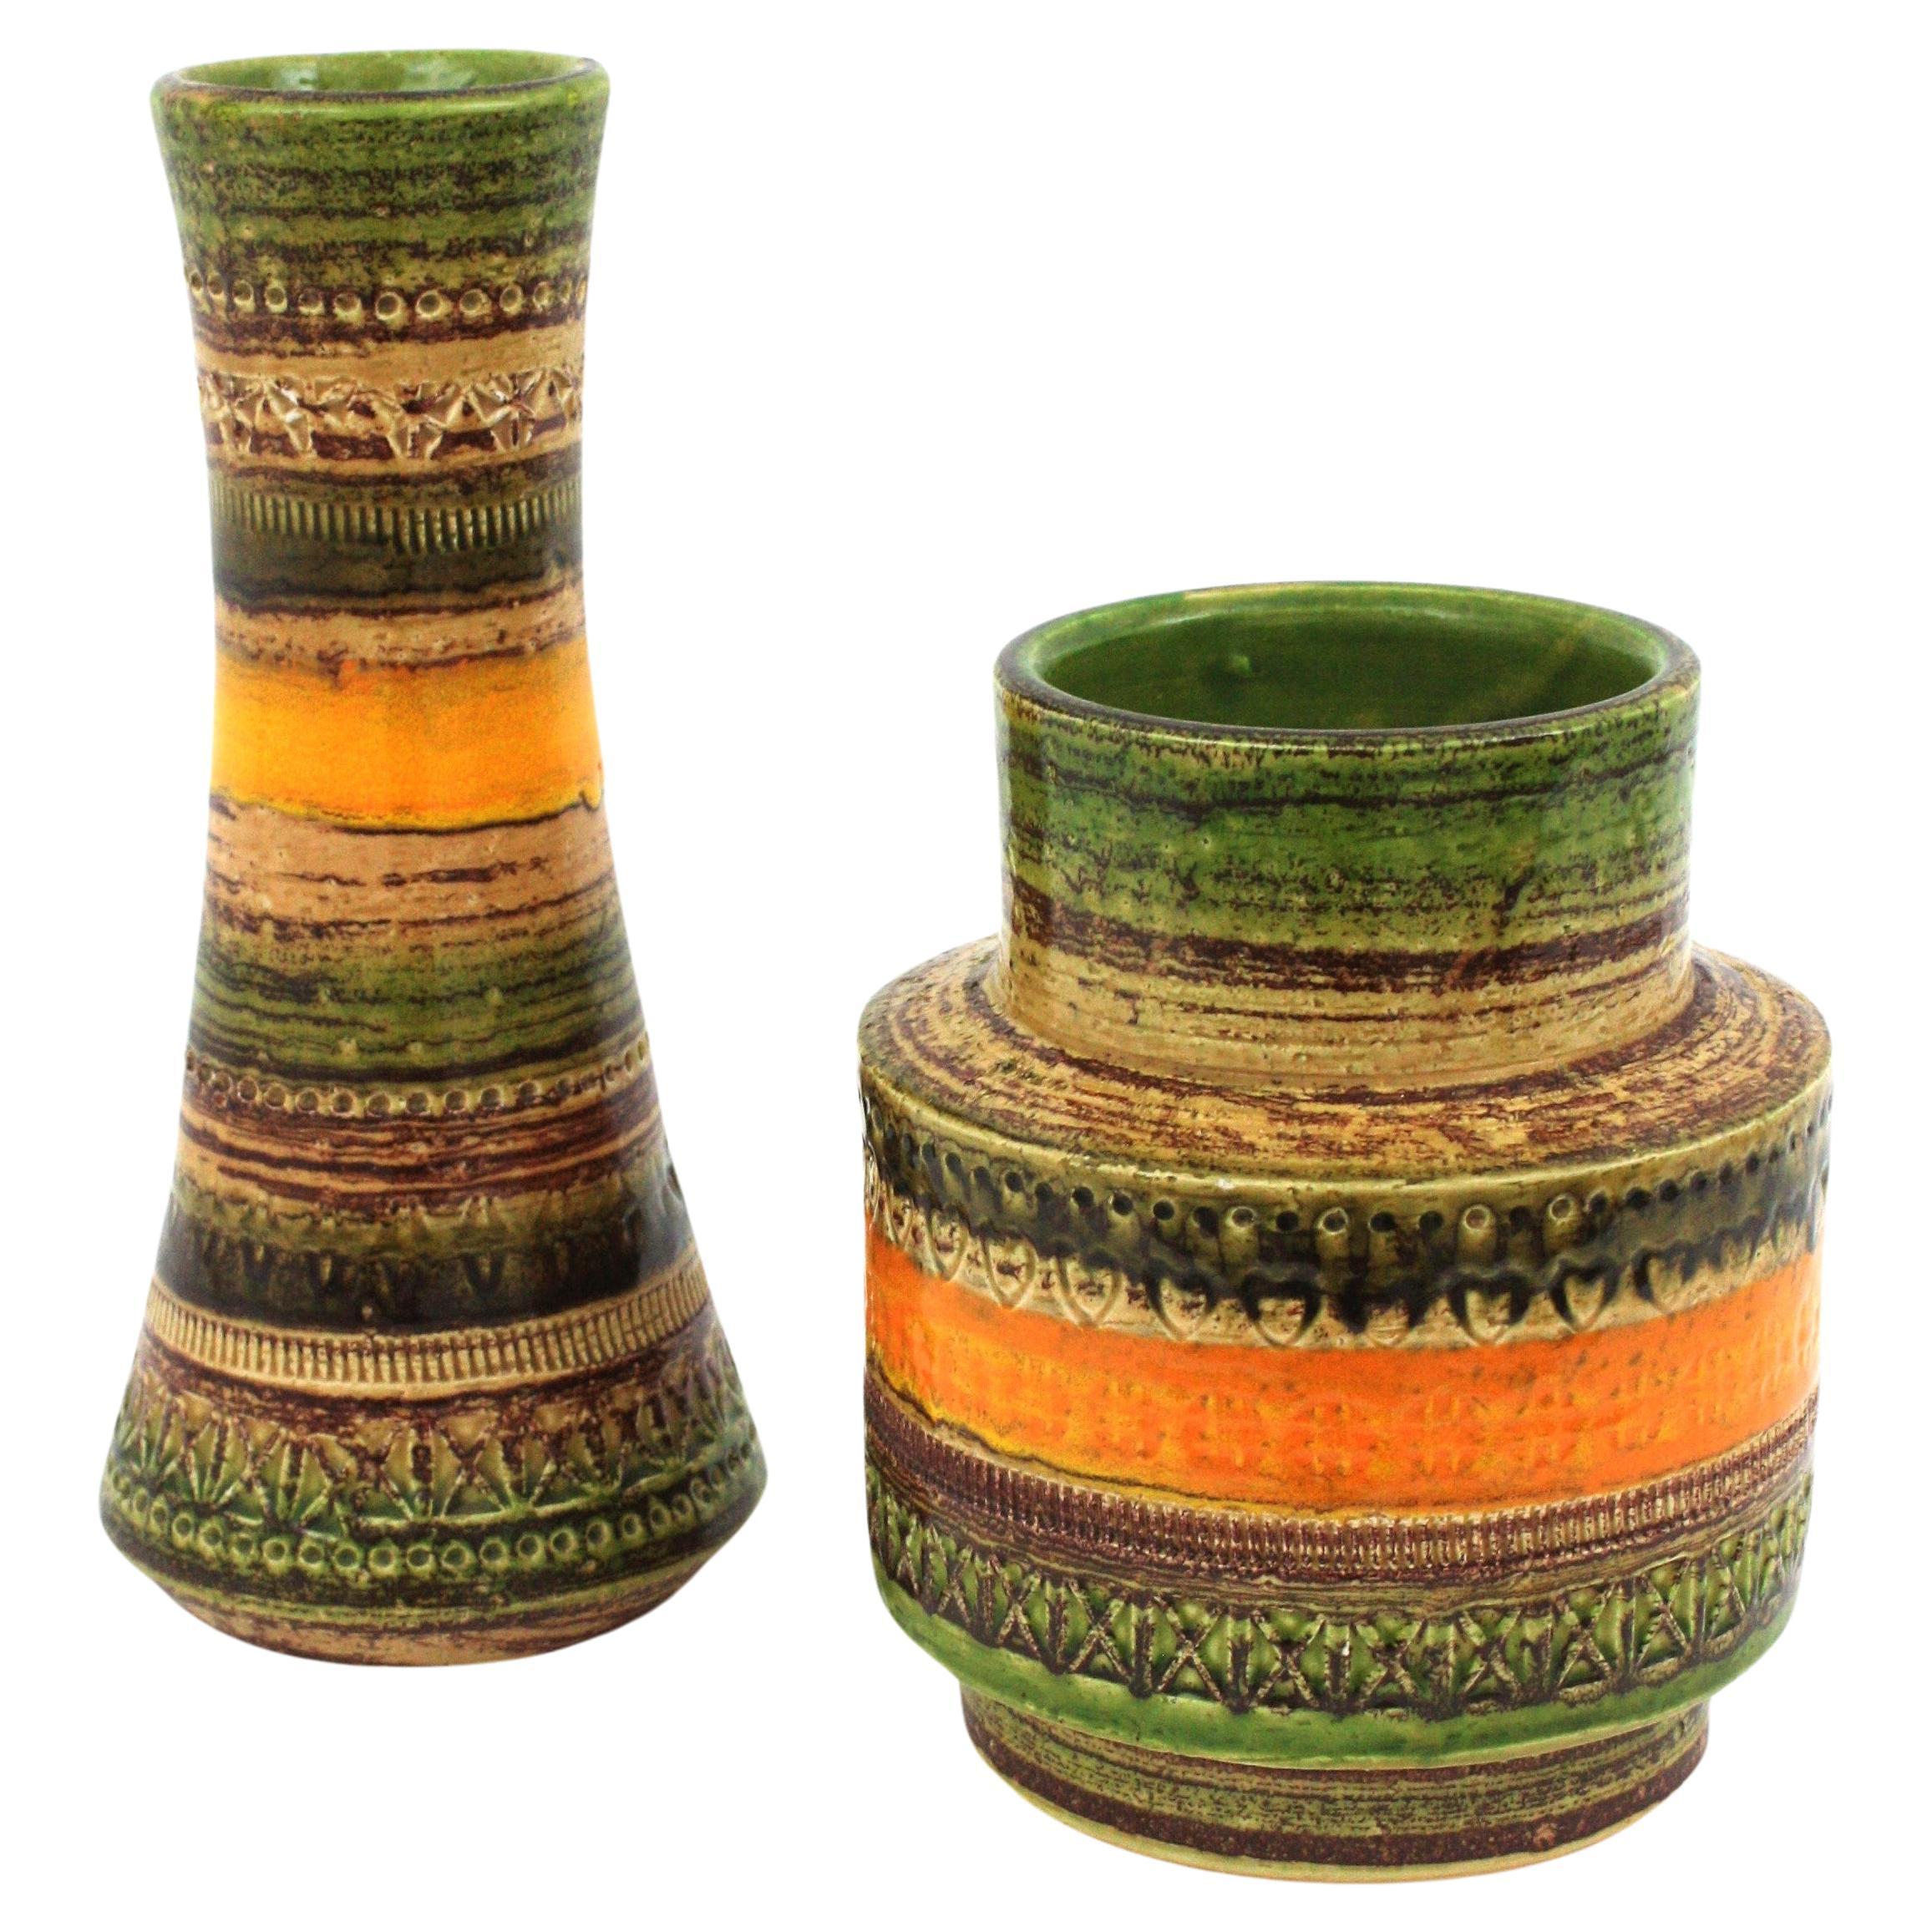 Bitossi Sahara Aldo Londi Cer Paoli Glazed Ceramic Vases, Italy, 1960s For Sale 5